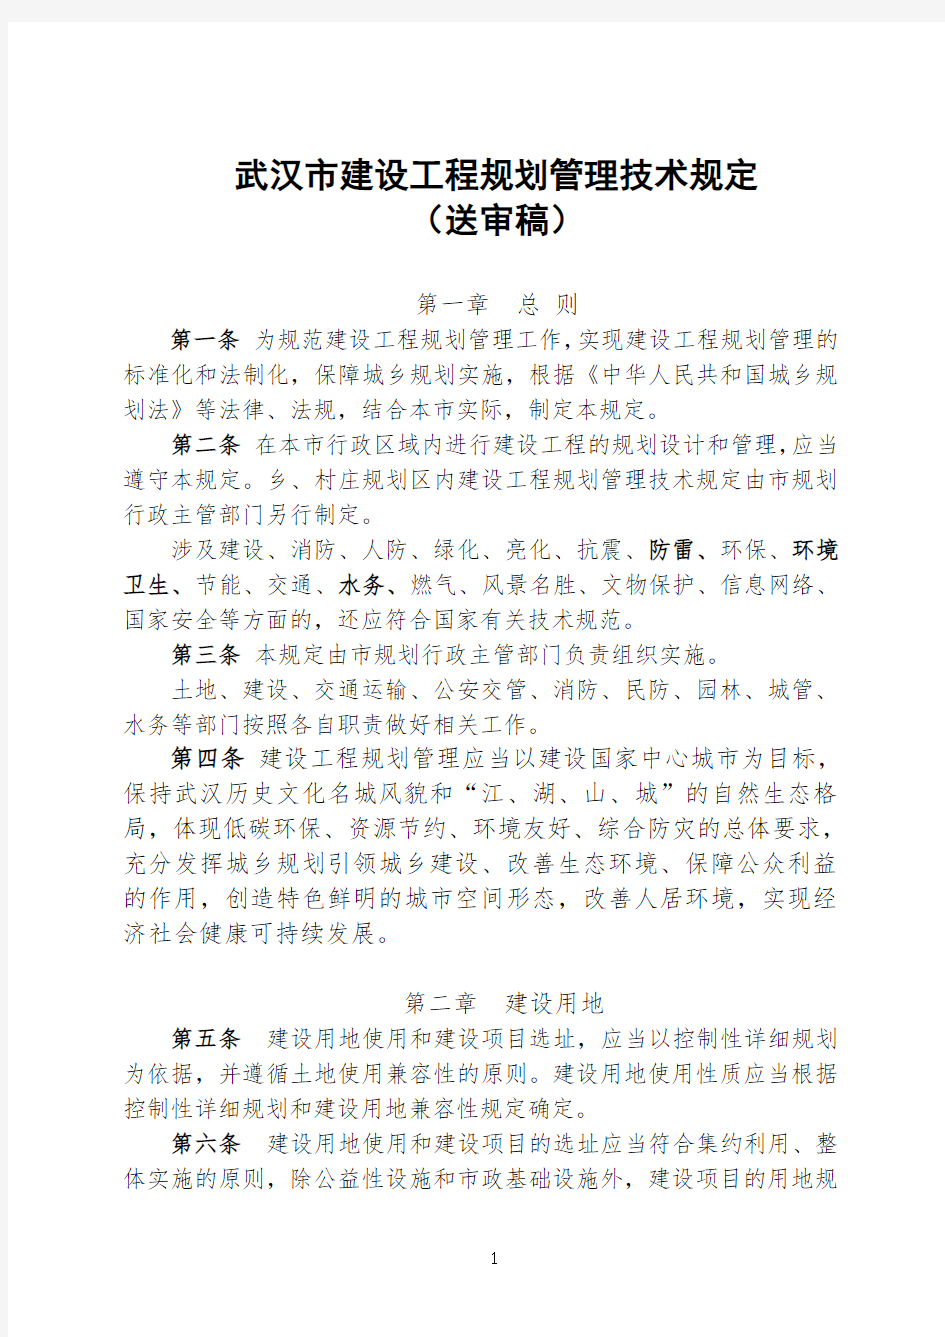 武汉市建设工程规划管理技术规定。143号令(2013.9.27)